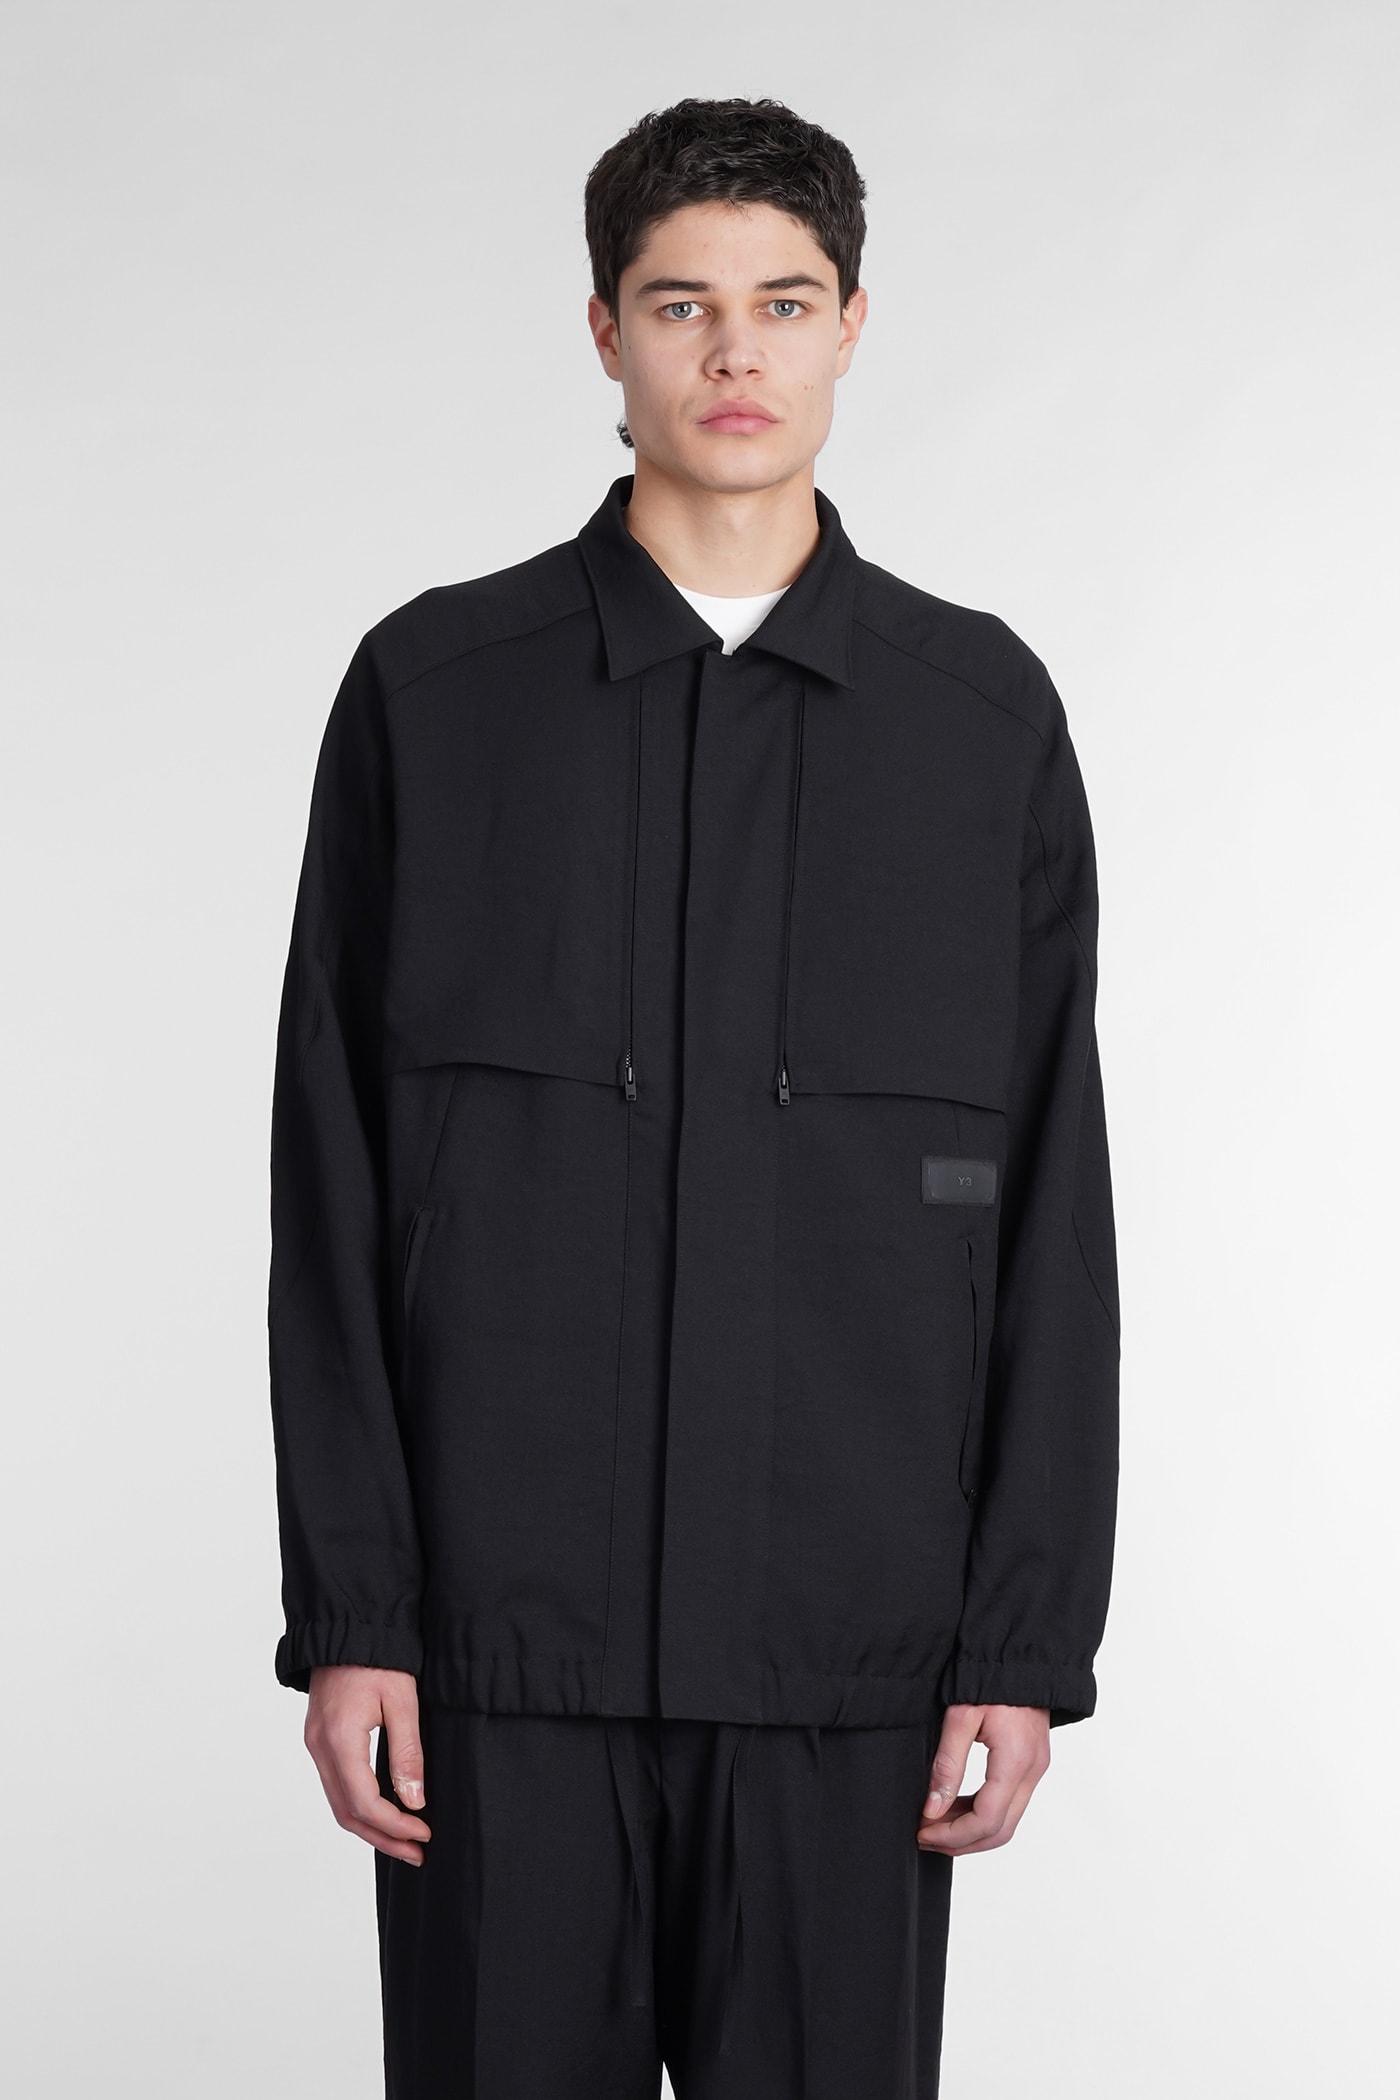 Y-3 Casual Jacket In Black Cotton